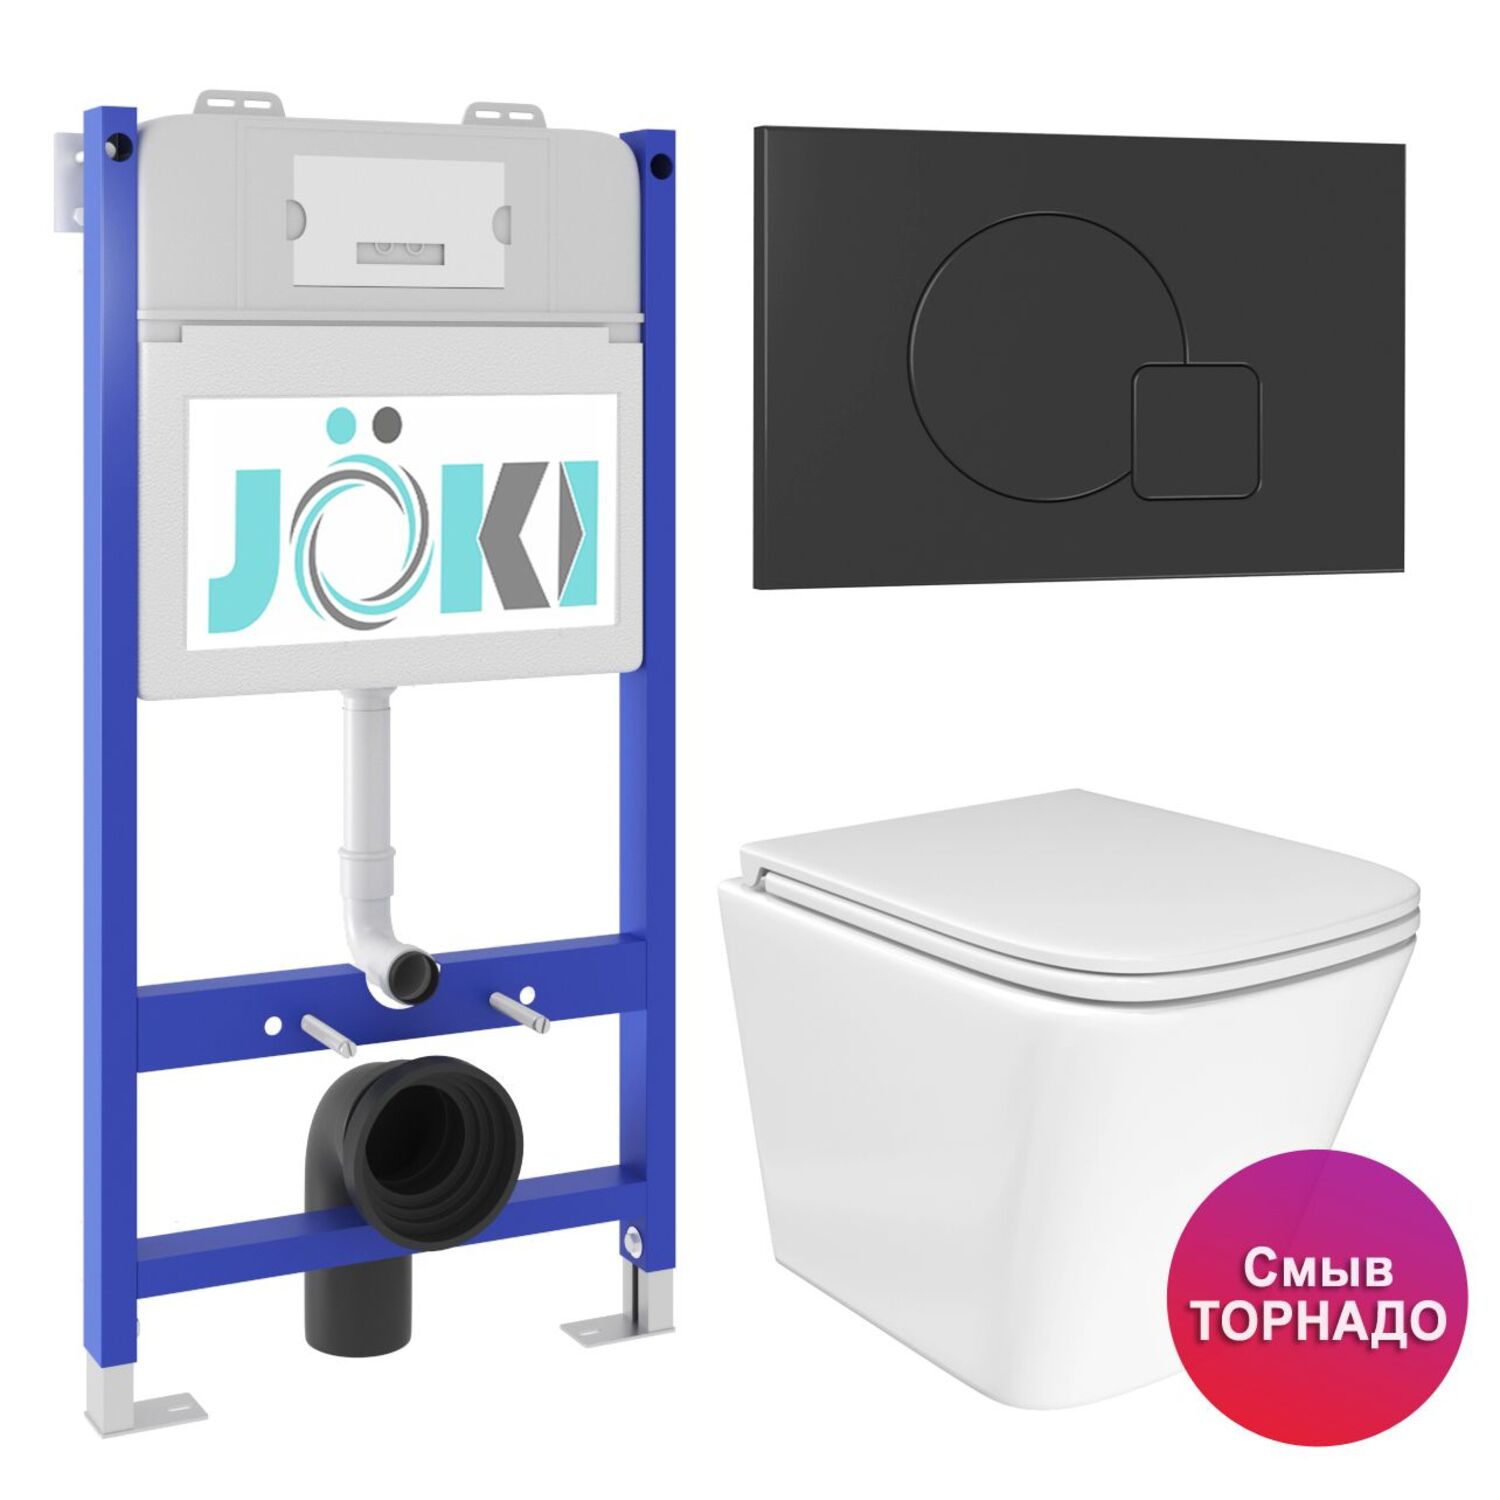 Комплект: JOKI Инсталляция JK03351+Кнопка JK023543BM черный+Verna T JK3031025 унитаз белый, смыв Торнадо